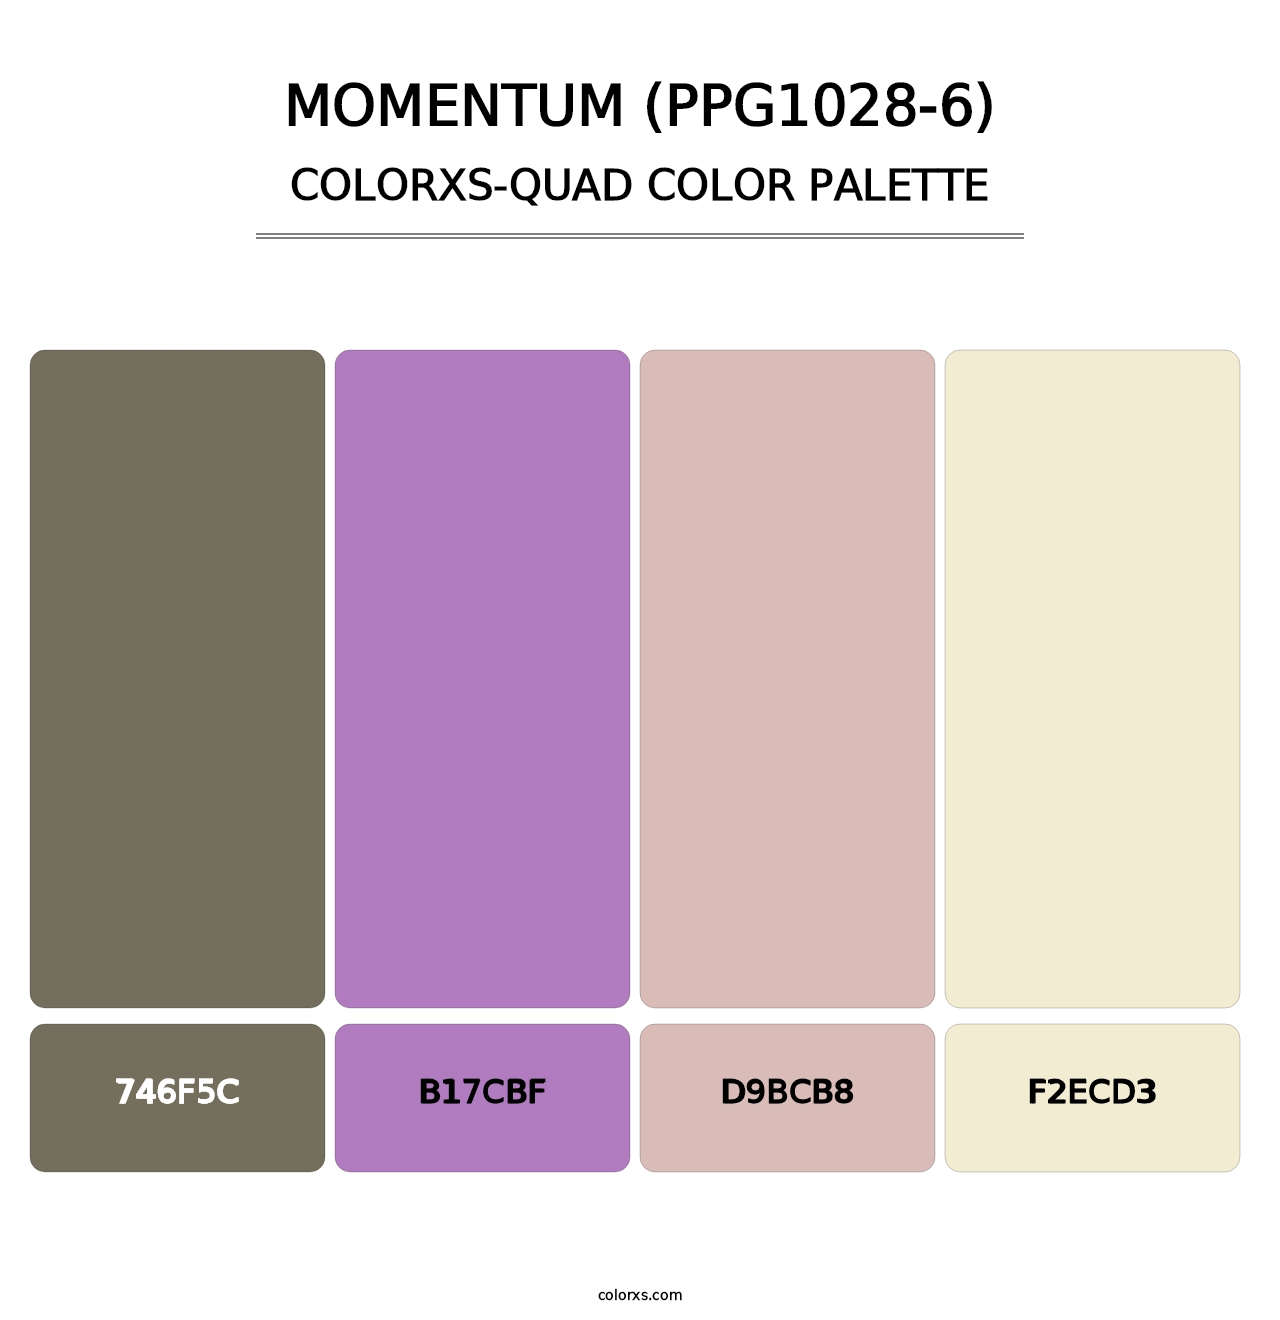 Momentum (PPG1028-6) - Colorxs Quad Palette